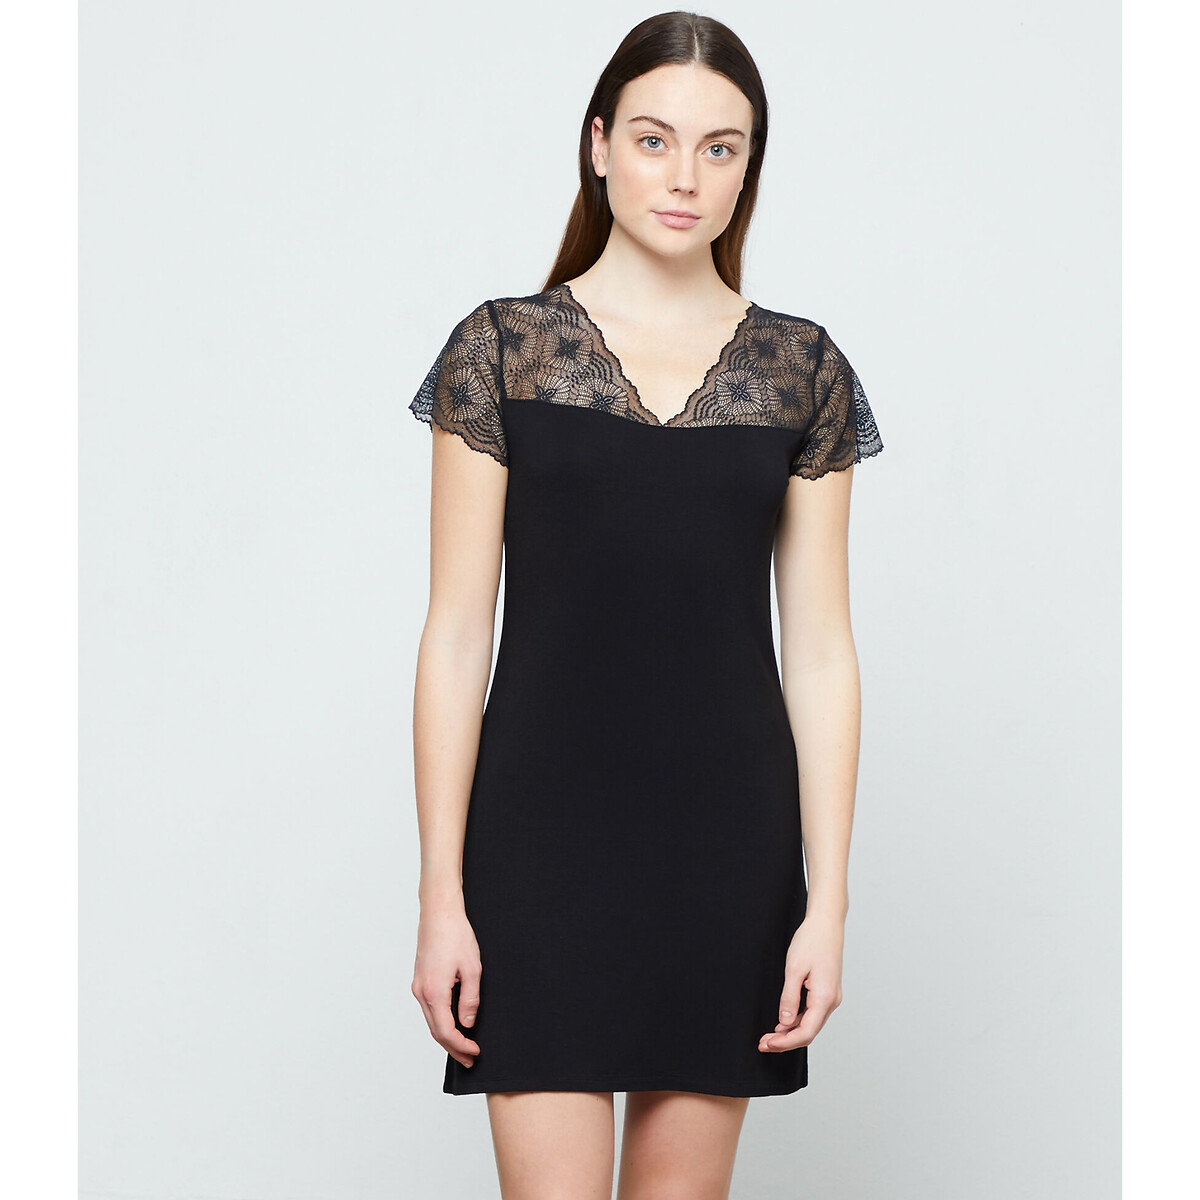 Liddy lace nightie with lace details , black, Etam | La Redoute